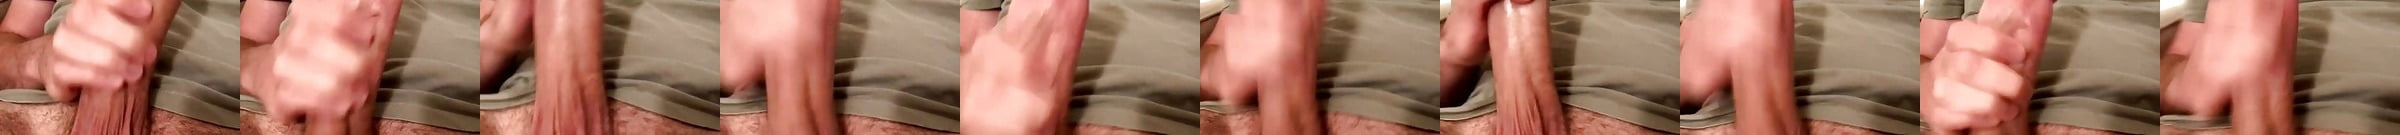 Hot Big Cut Cock Cum A Load Free Gay Porn Dd Xhamster